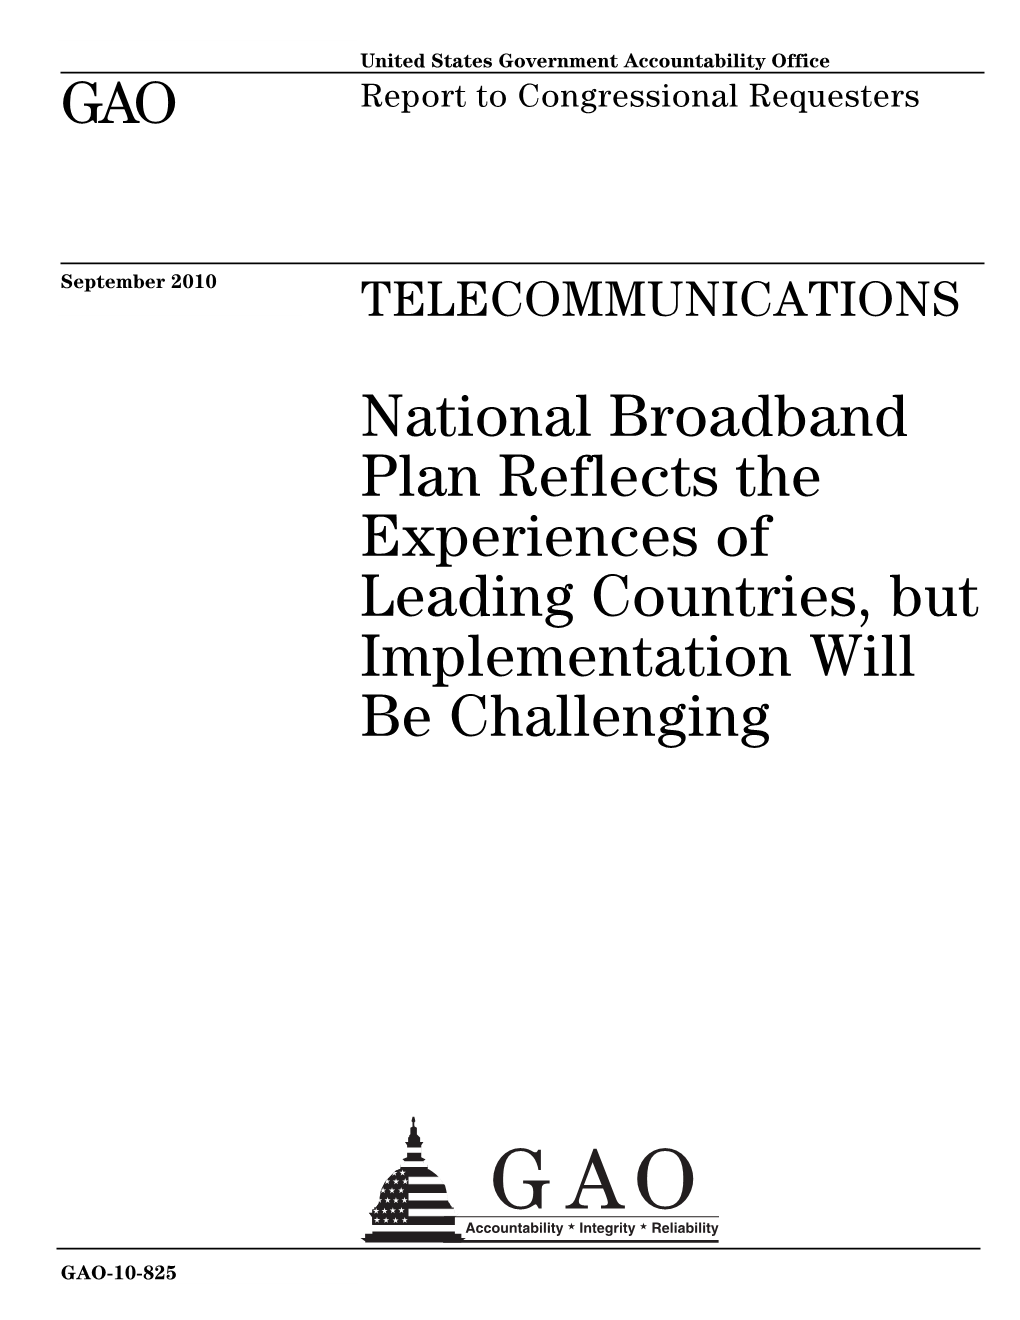 GAO-10-825 Telecommunications: National Broadband Plan Reflects